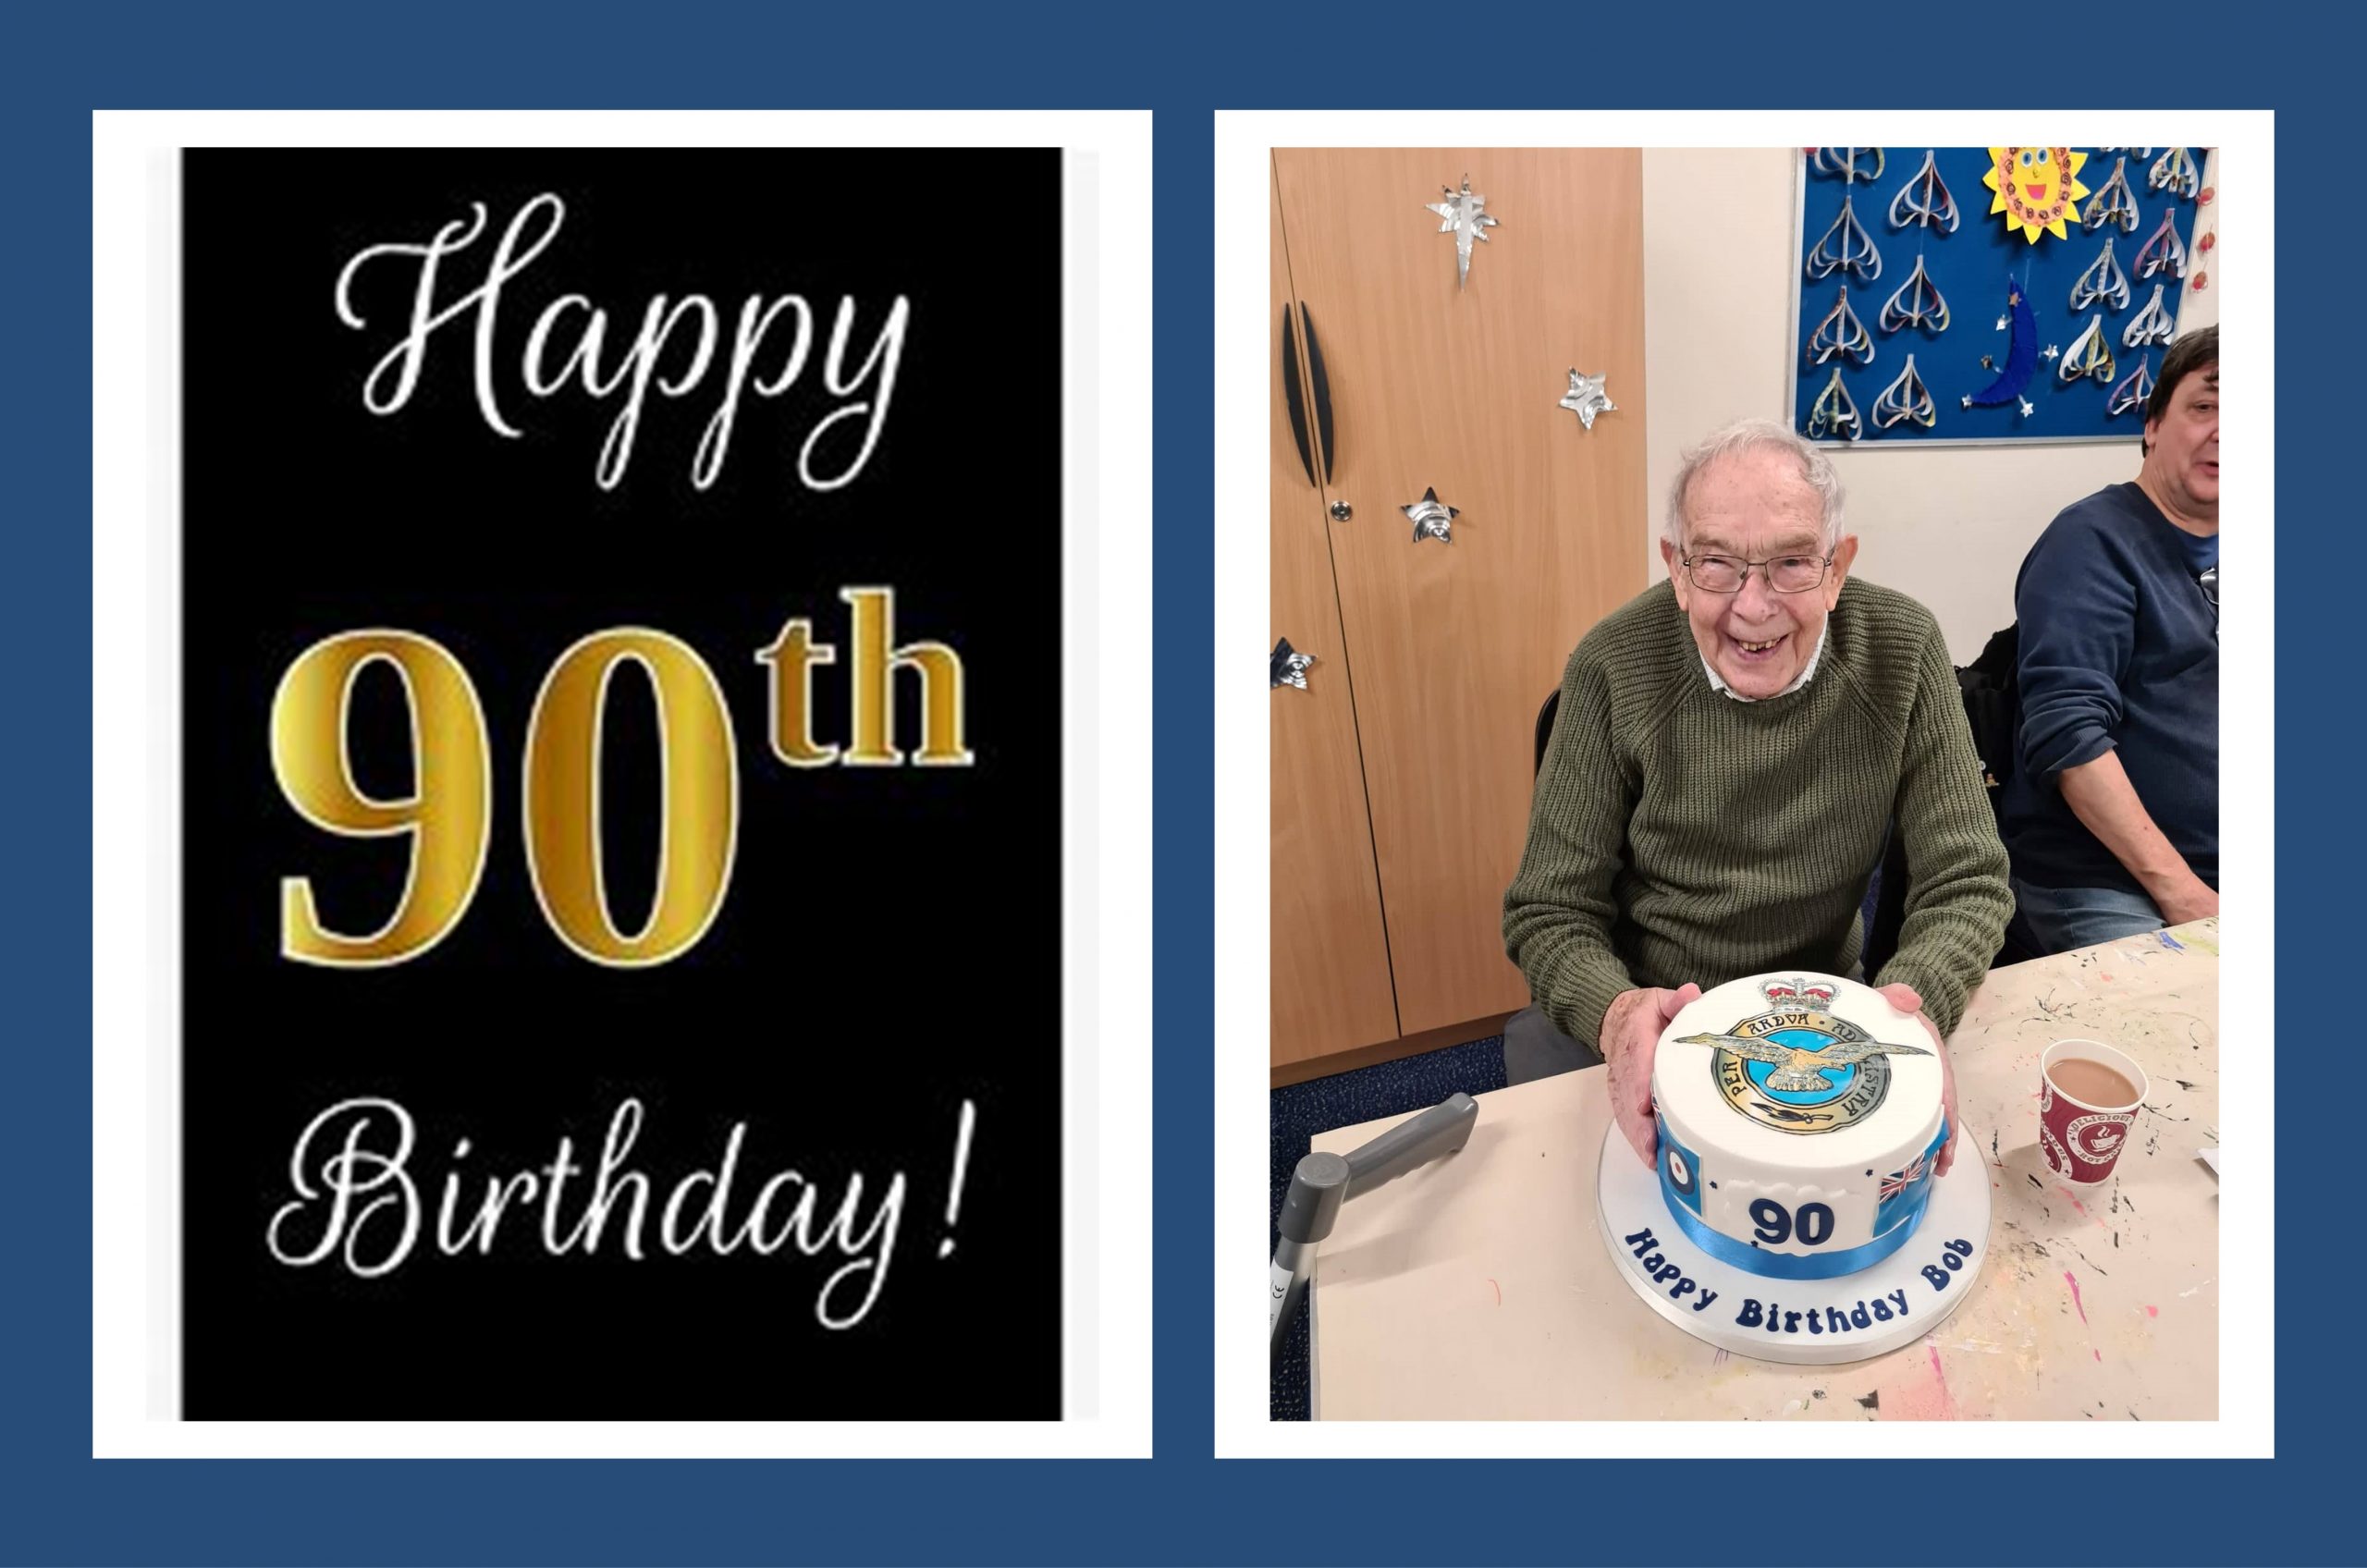 Bob turns 90!